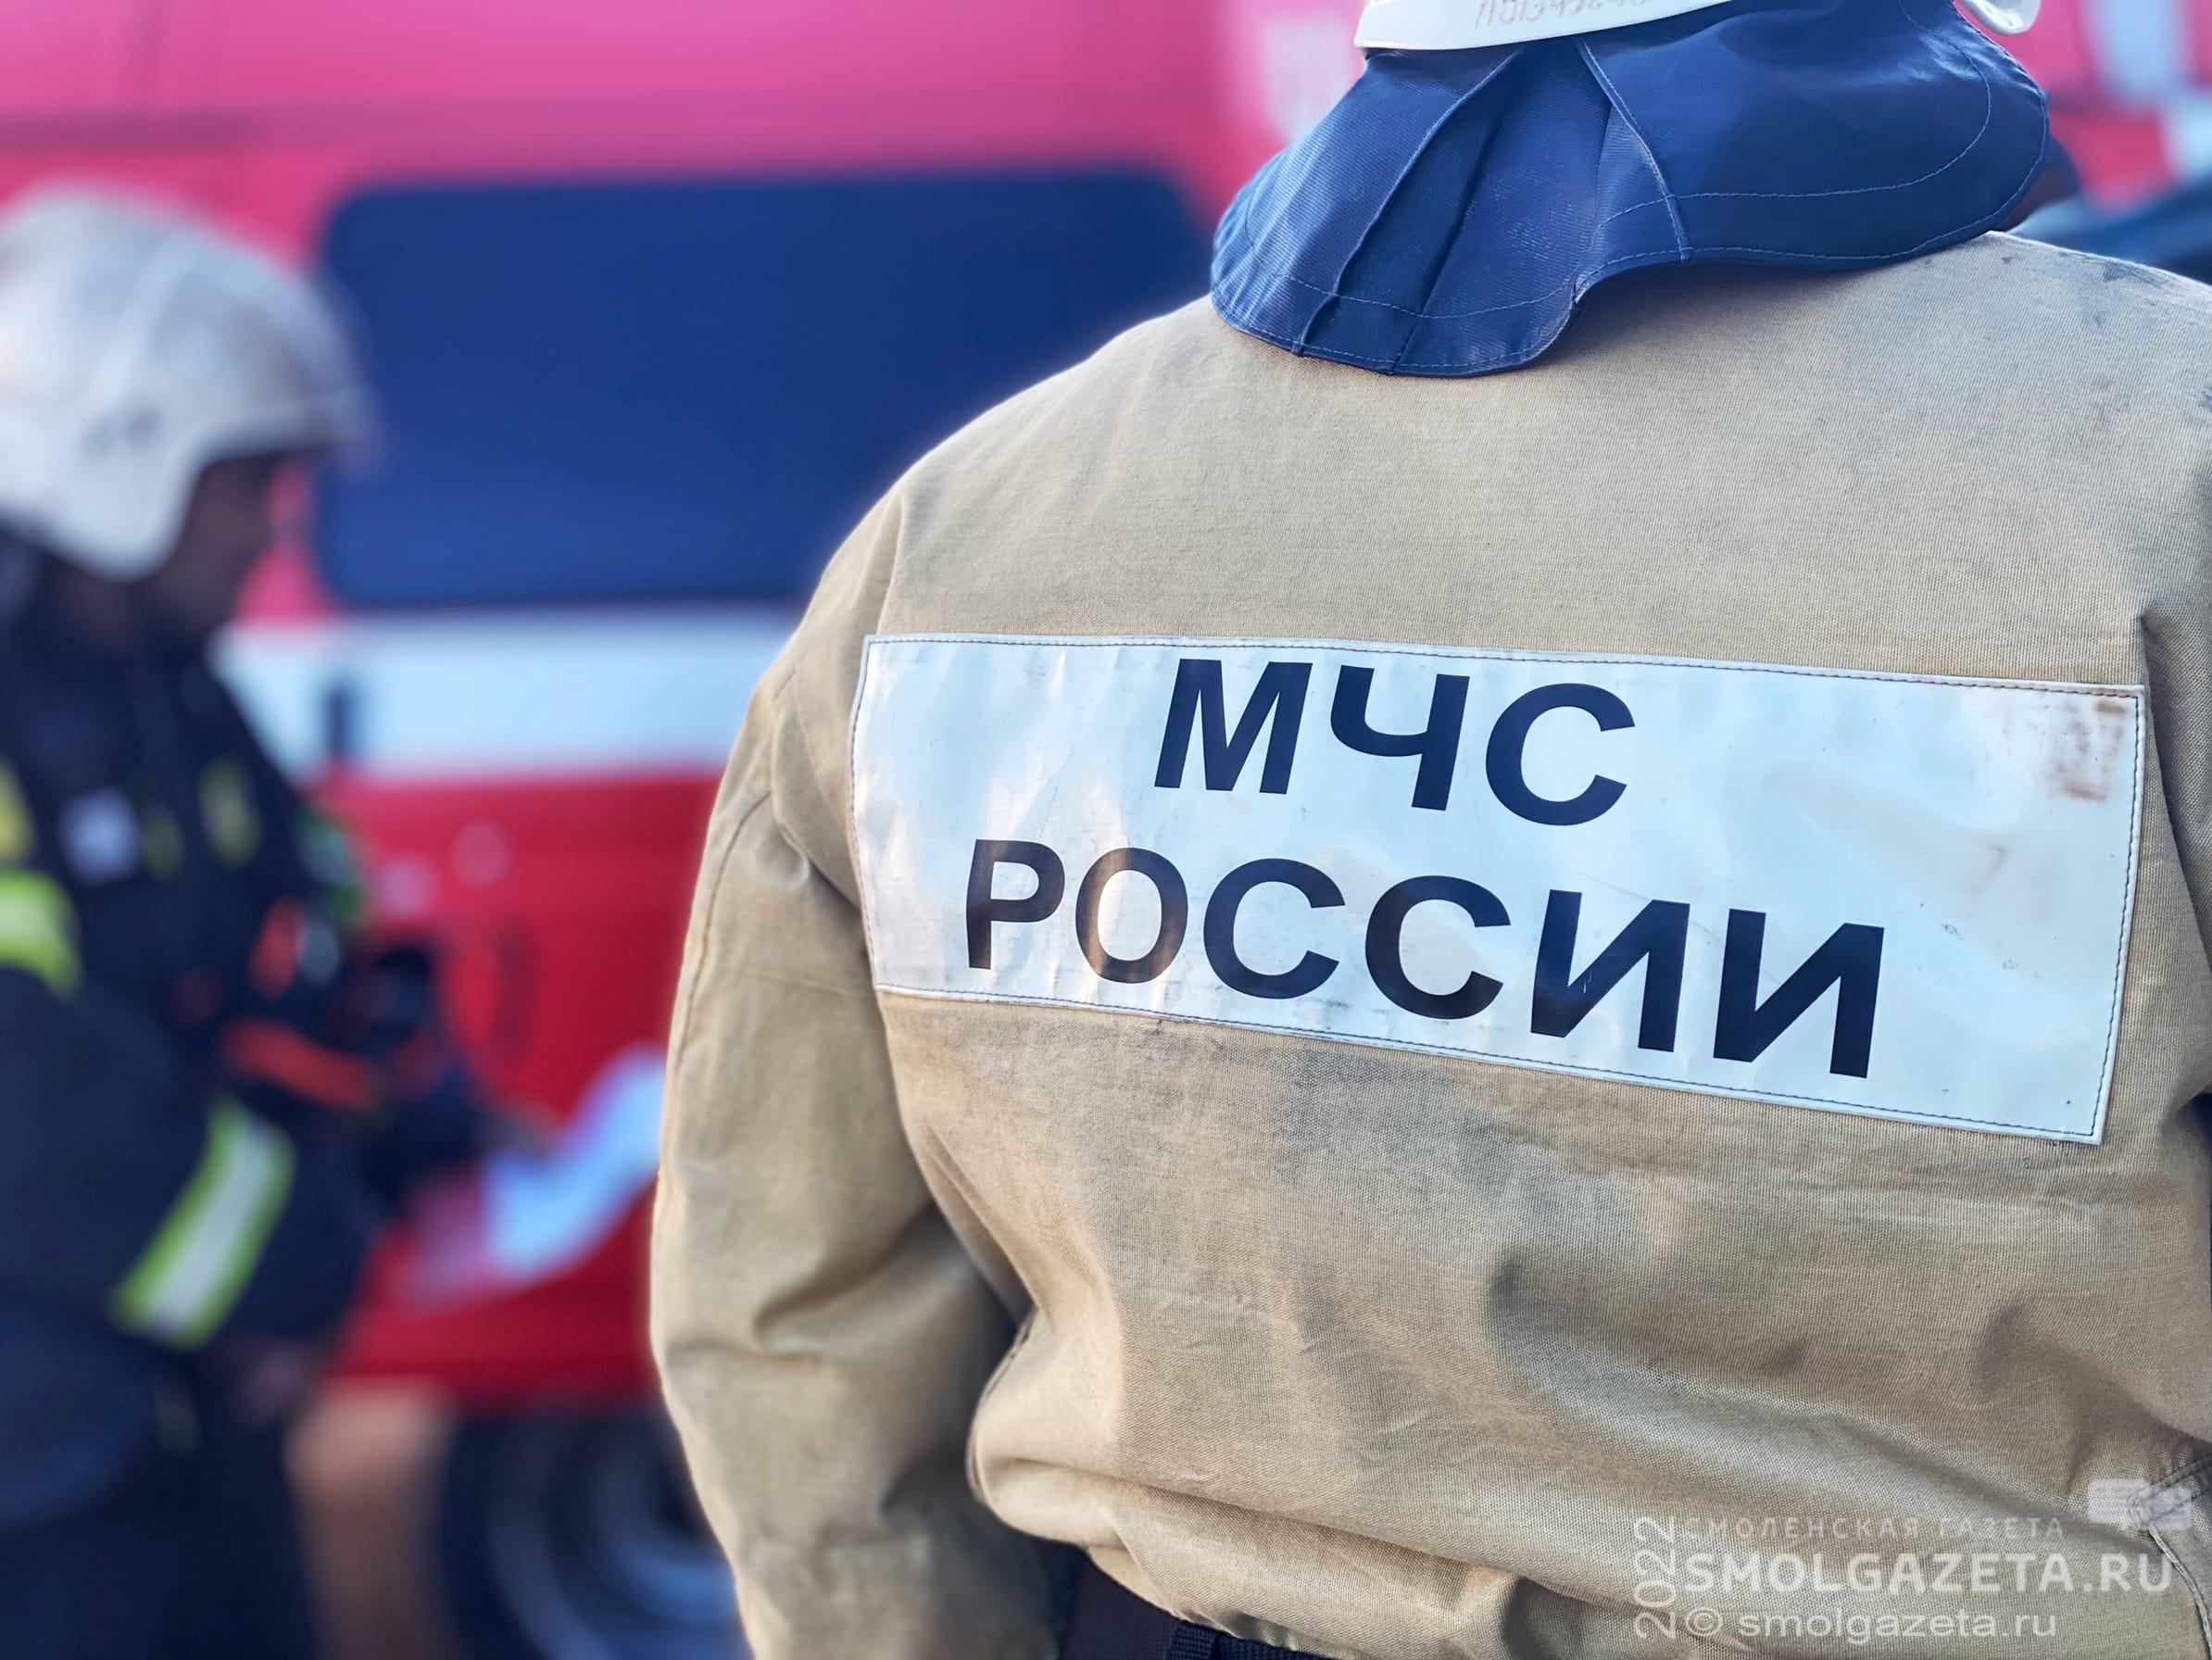 3048 пожаров зарегистрировали в Смоленской области за десять месяцев